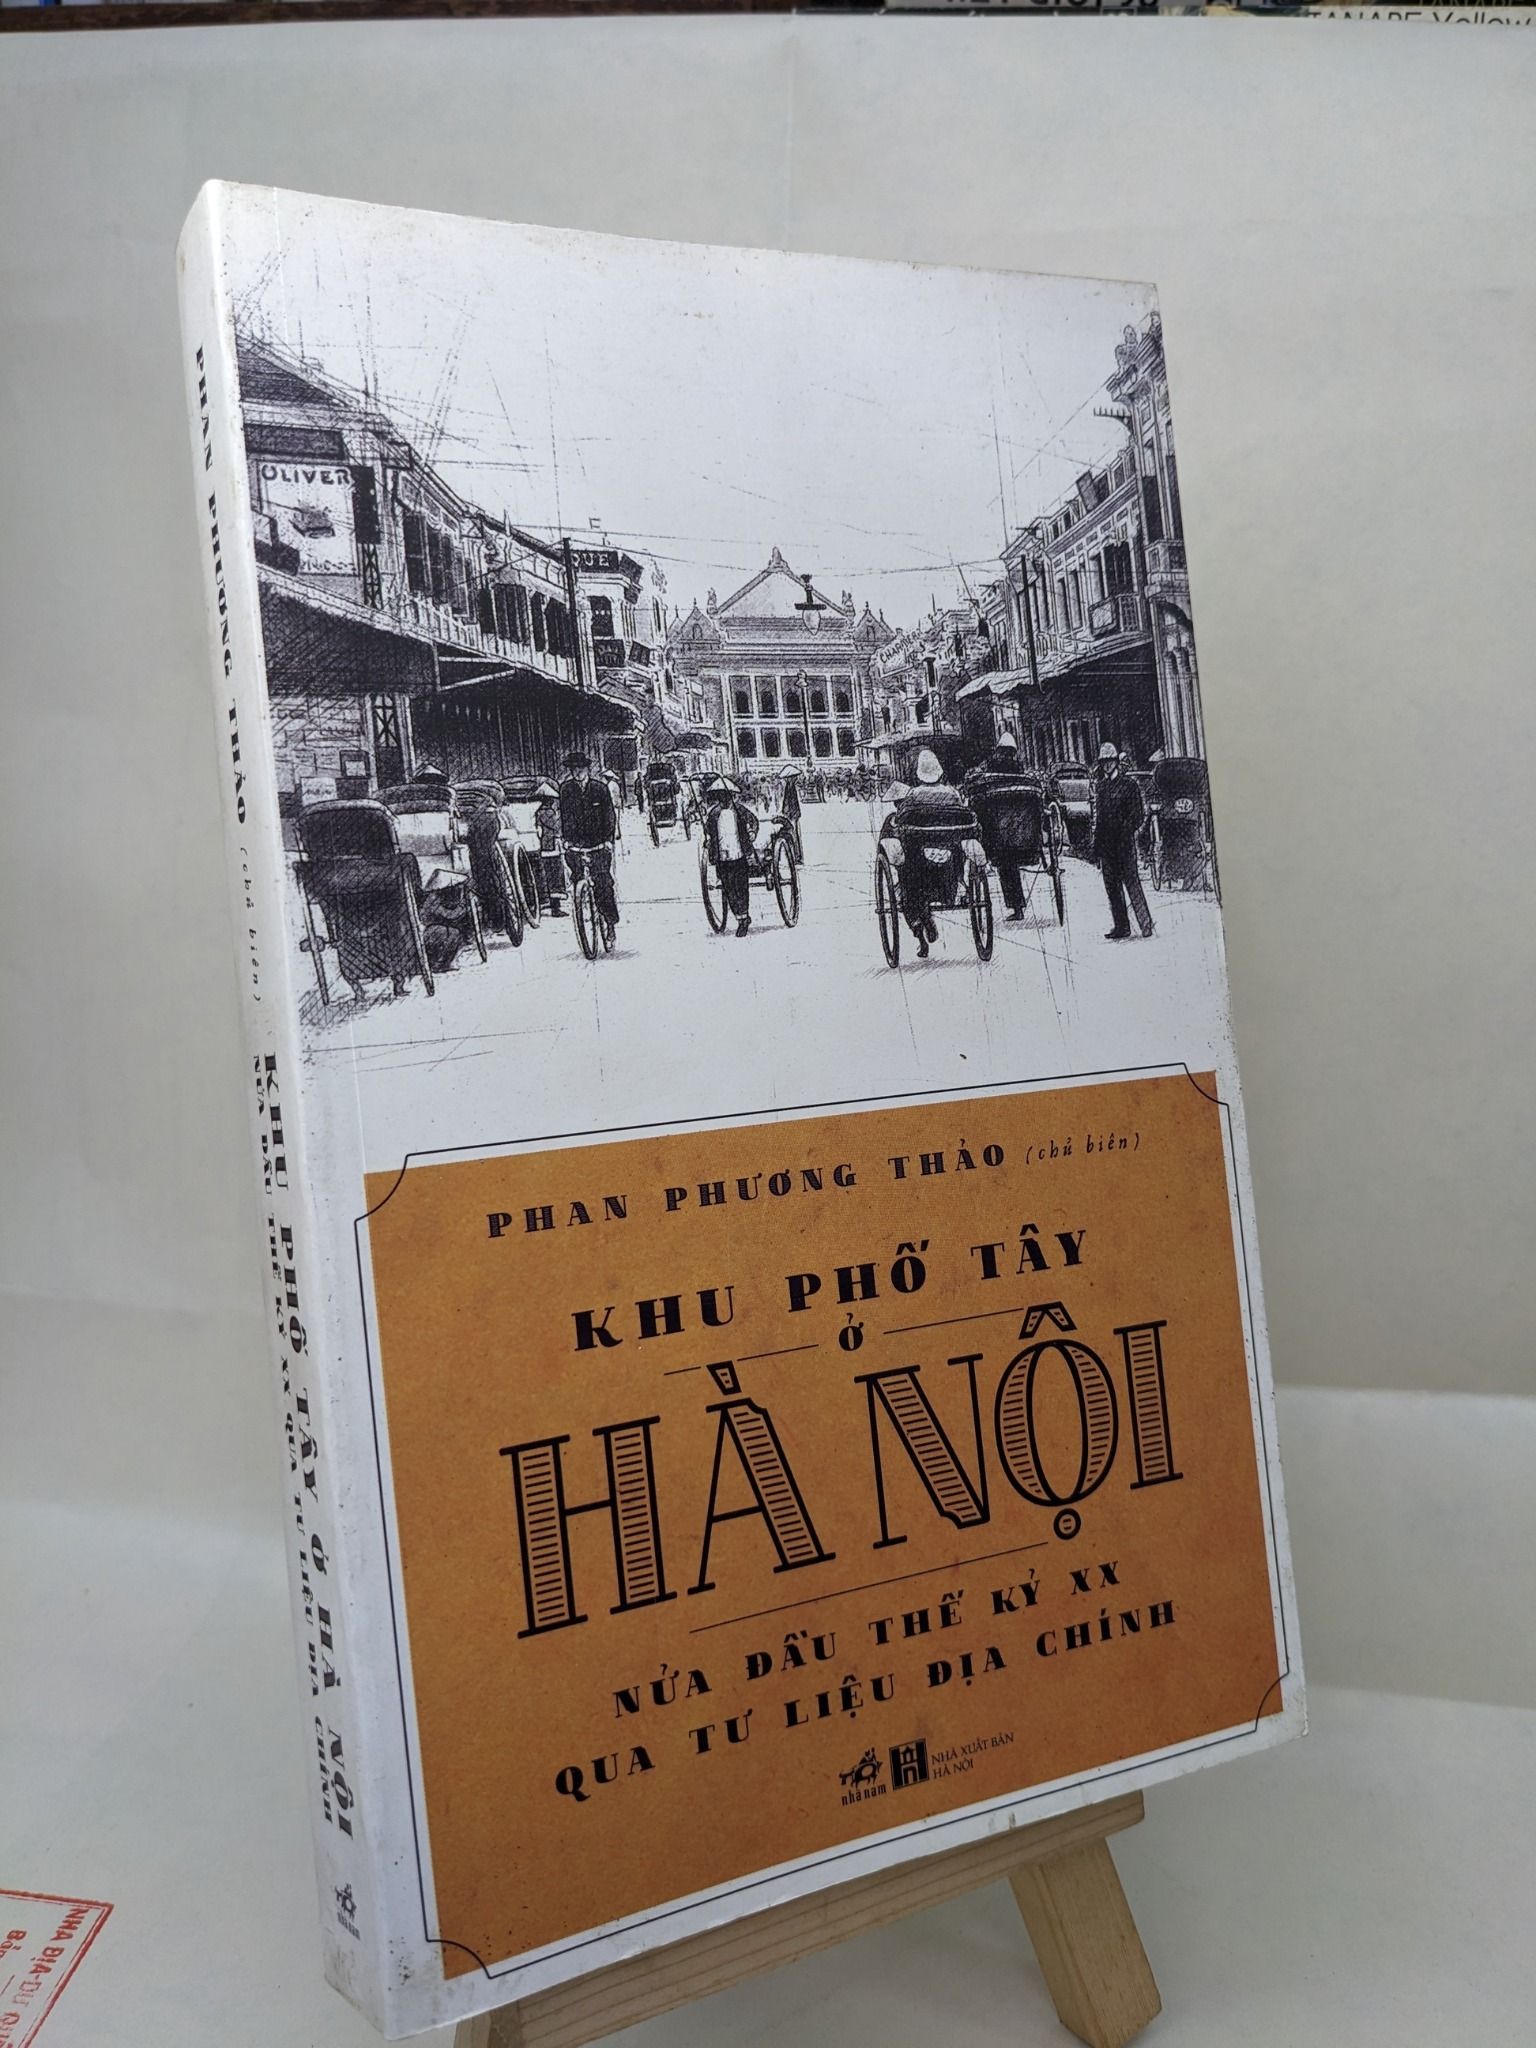  Khu phố Tây ở Hà Nội nửa đầu thế kỷ XX qua tư liệu địa chính 